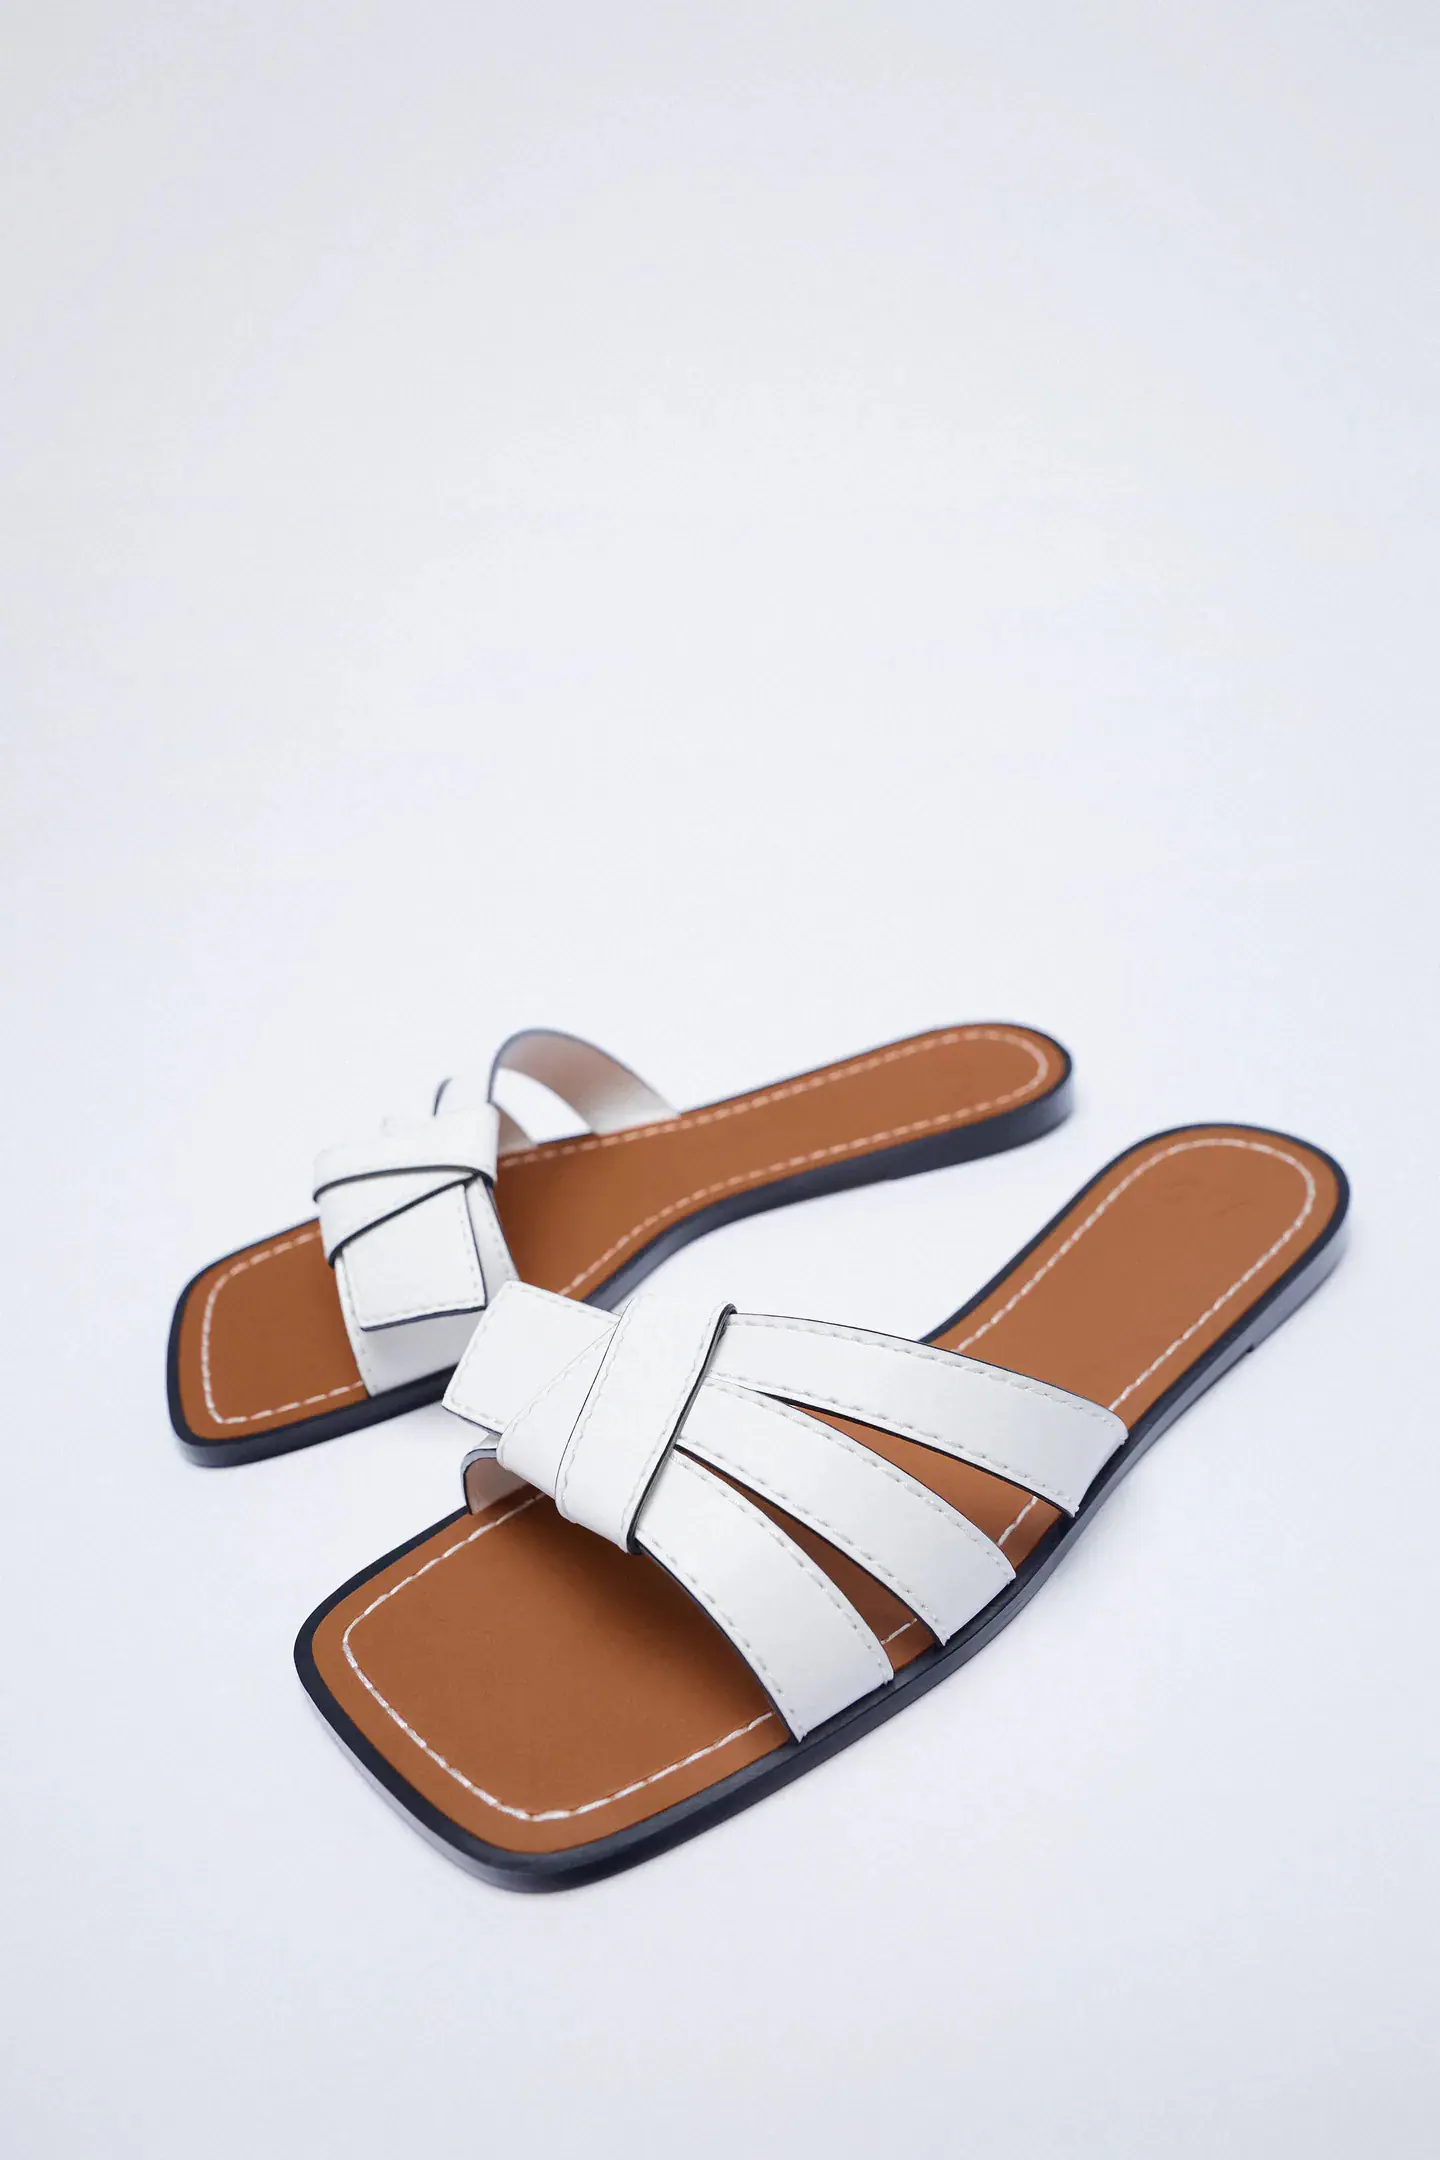 Fotos: Las sandalias blancas más cómodas y ponibles de Zara anticipan el calor y ya nos hacen soñar con el verano Mujer Hoy